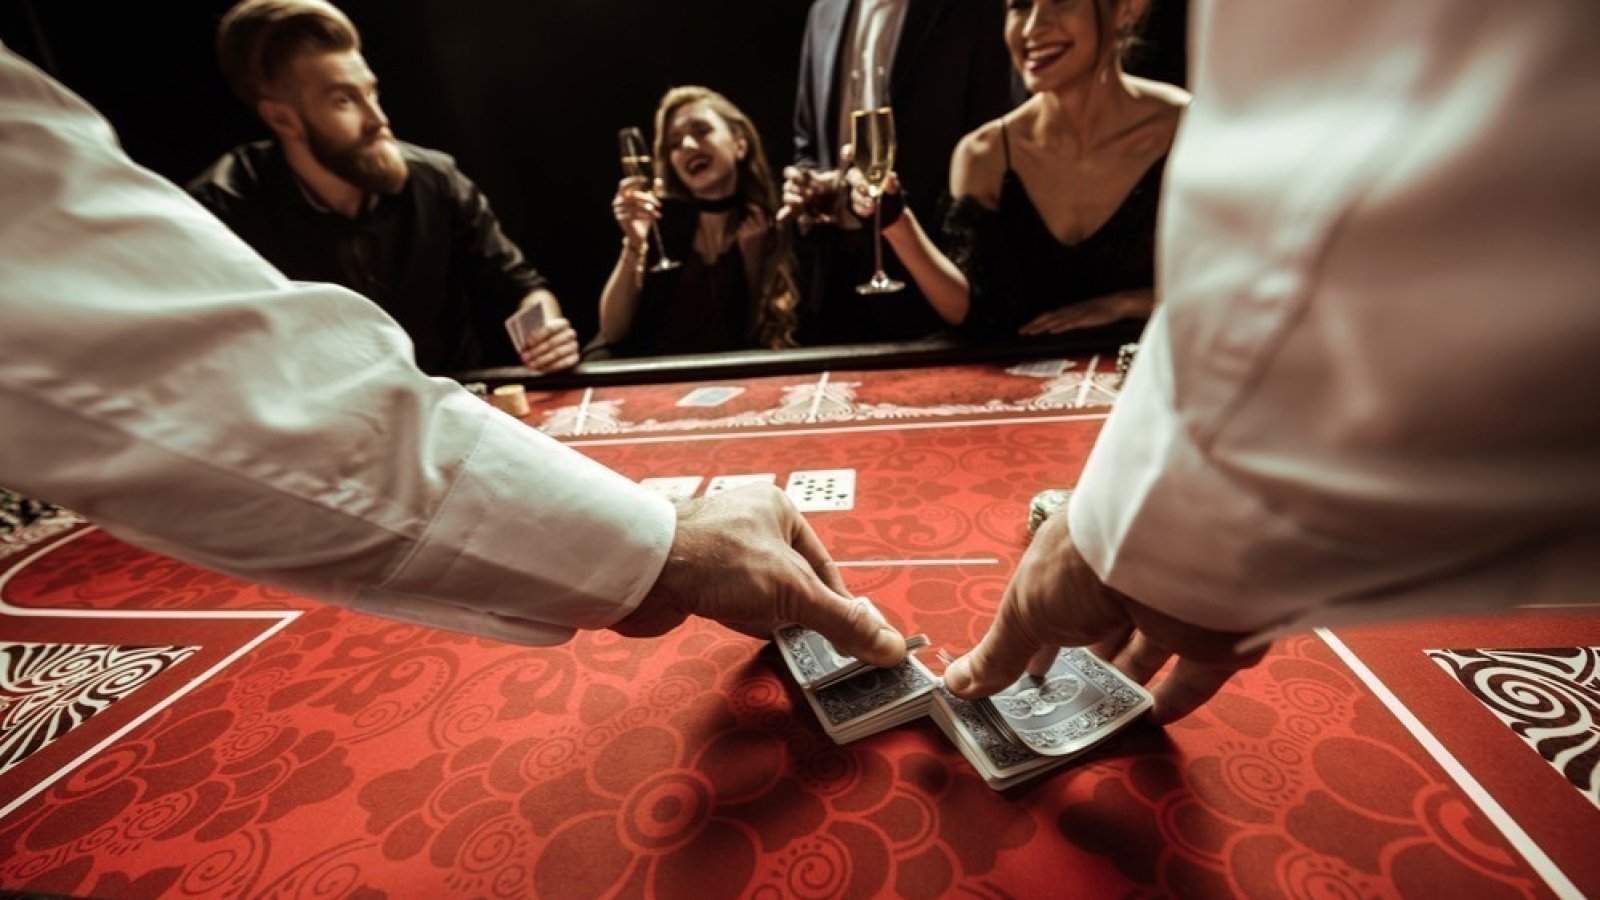 Страхование на случай проигрыша в казино животные играют в карты картина